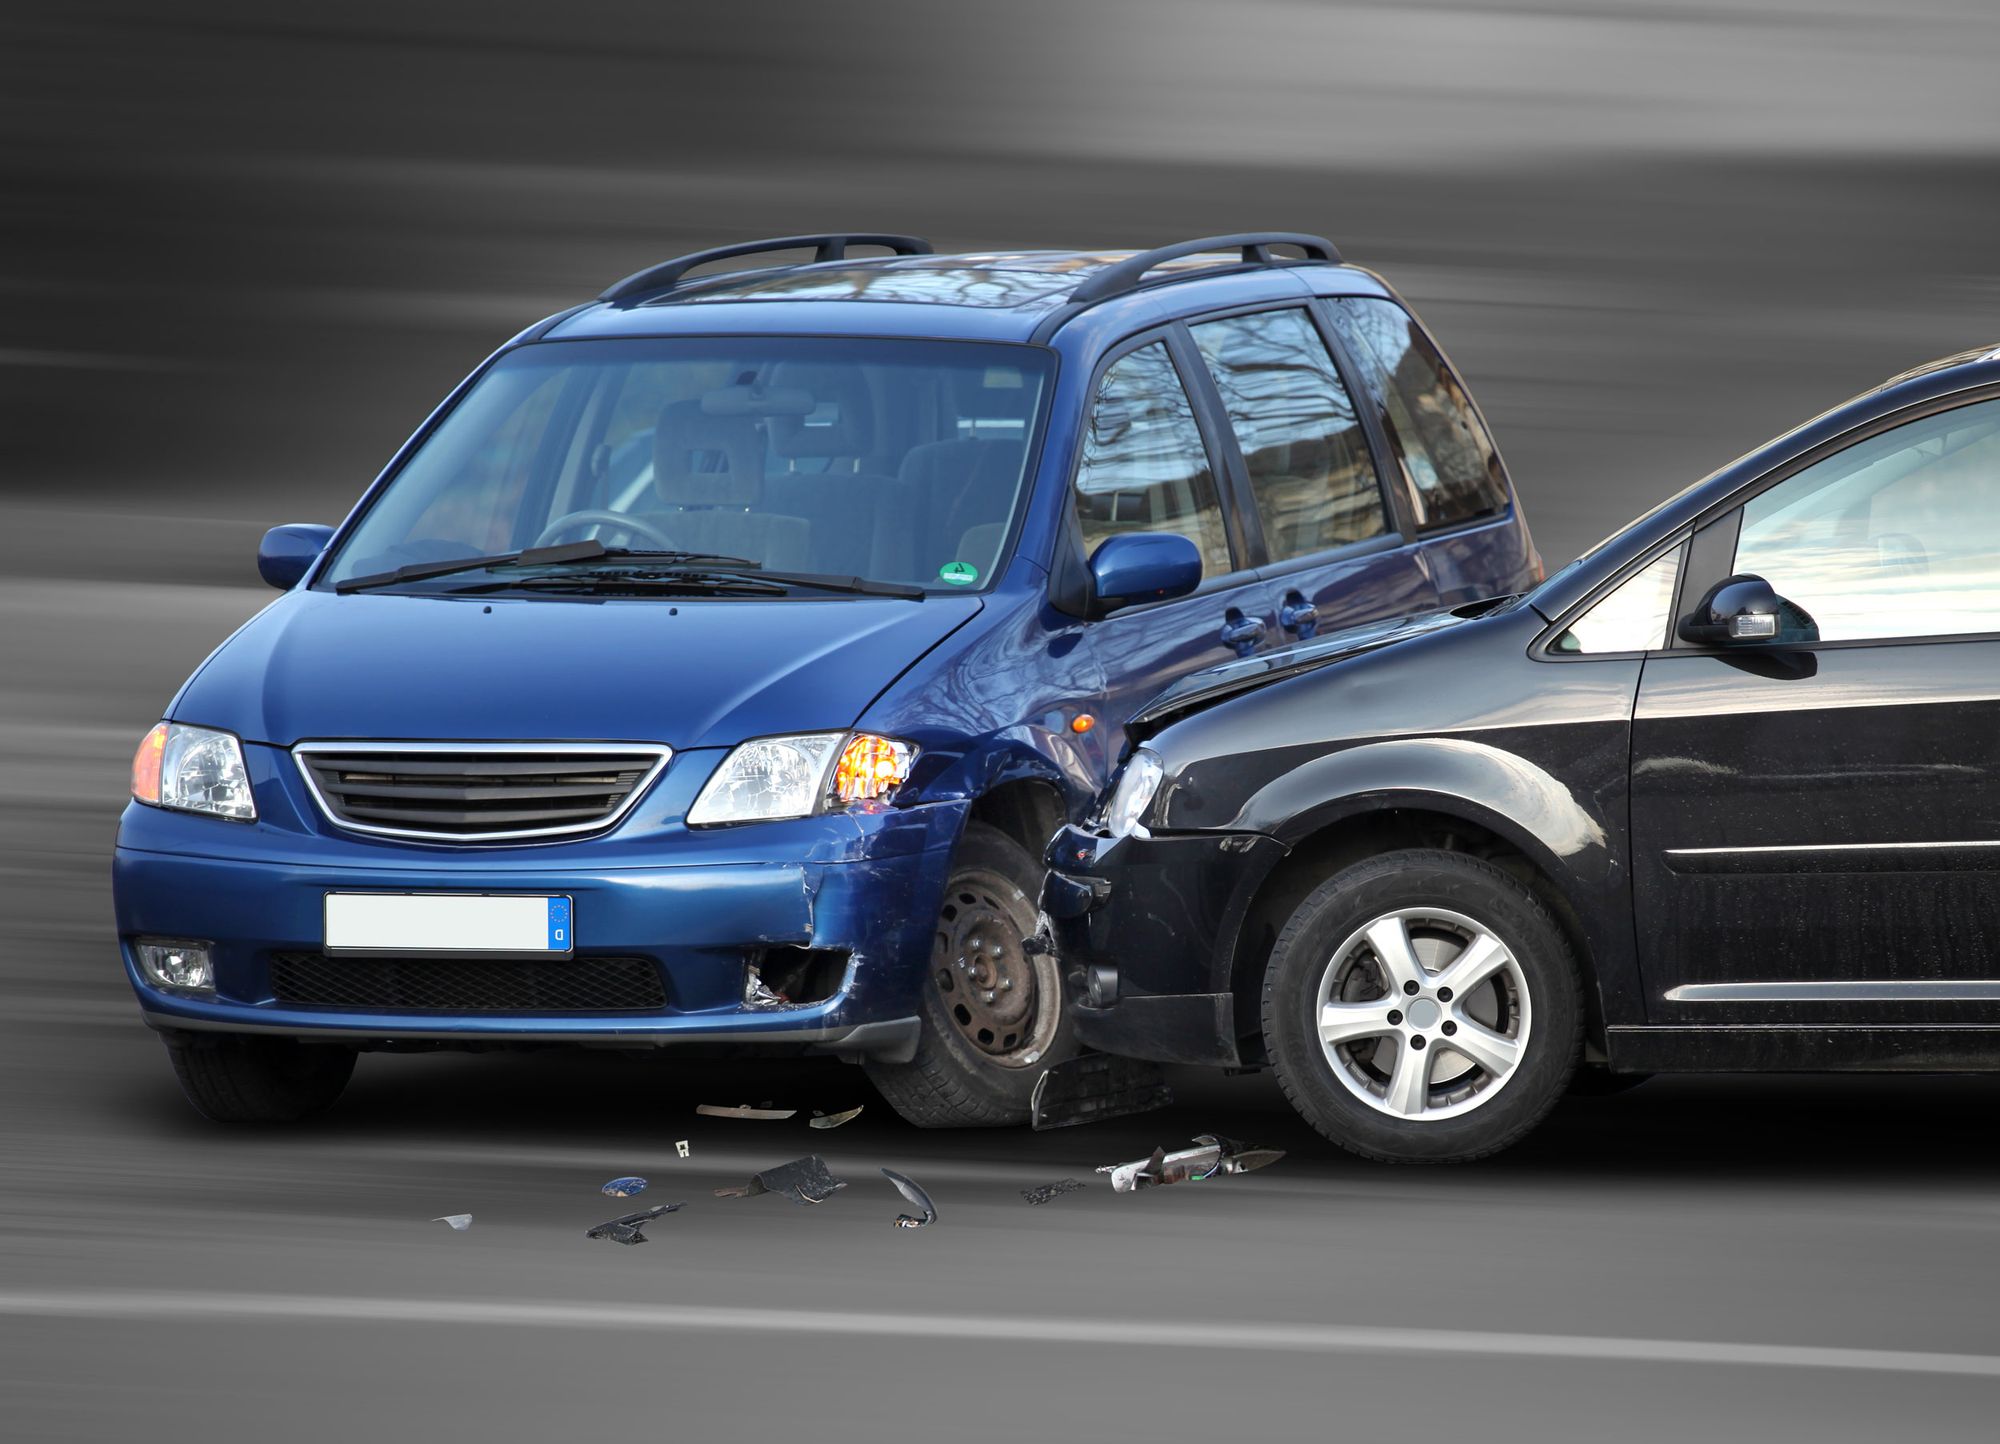 Plus de 25% des accidents sont dûs à une vitesse excessive, selon le conseil interministériel.